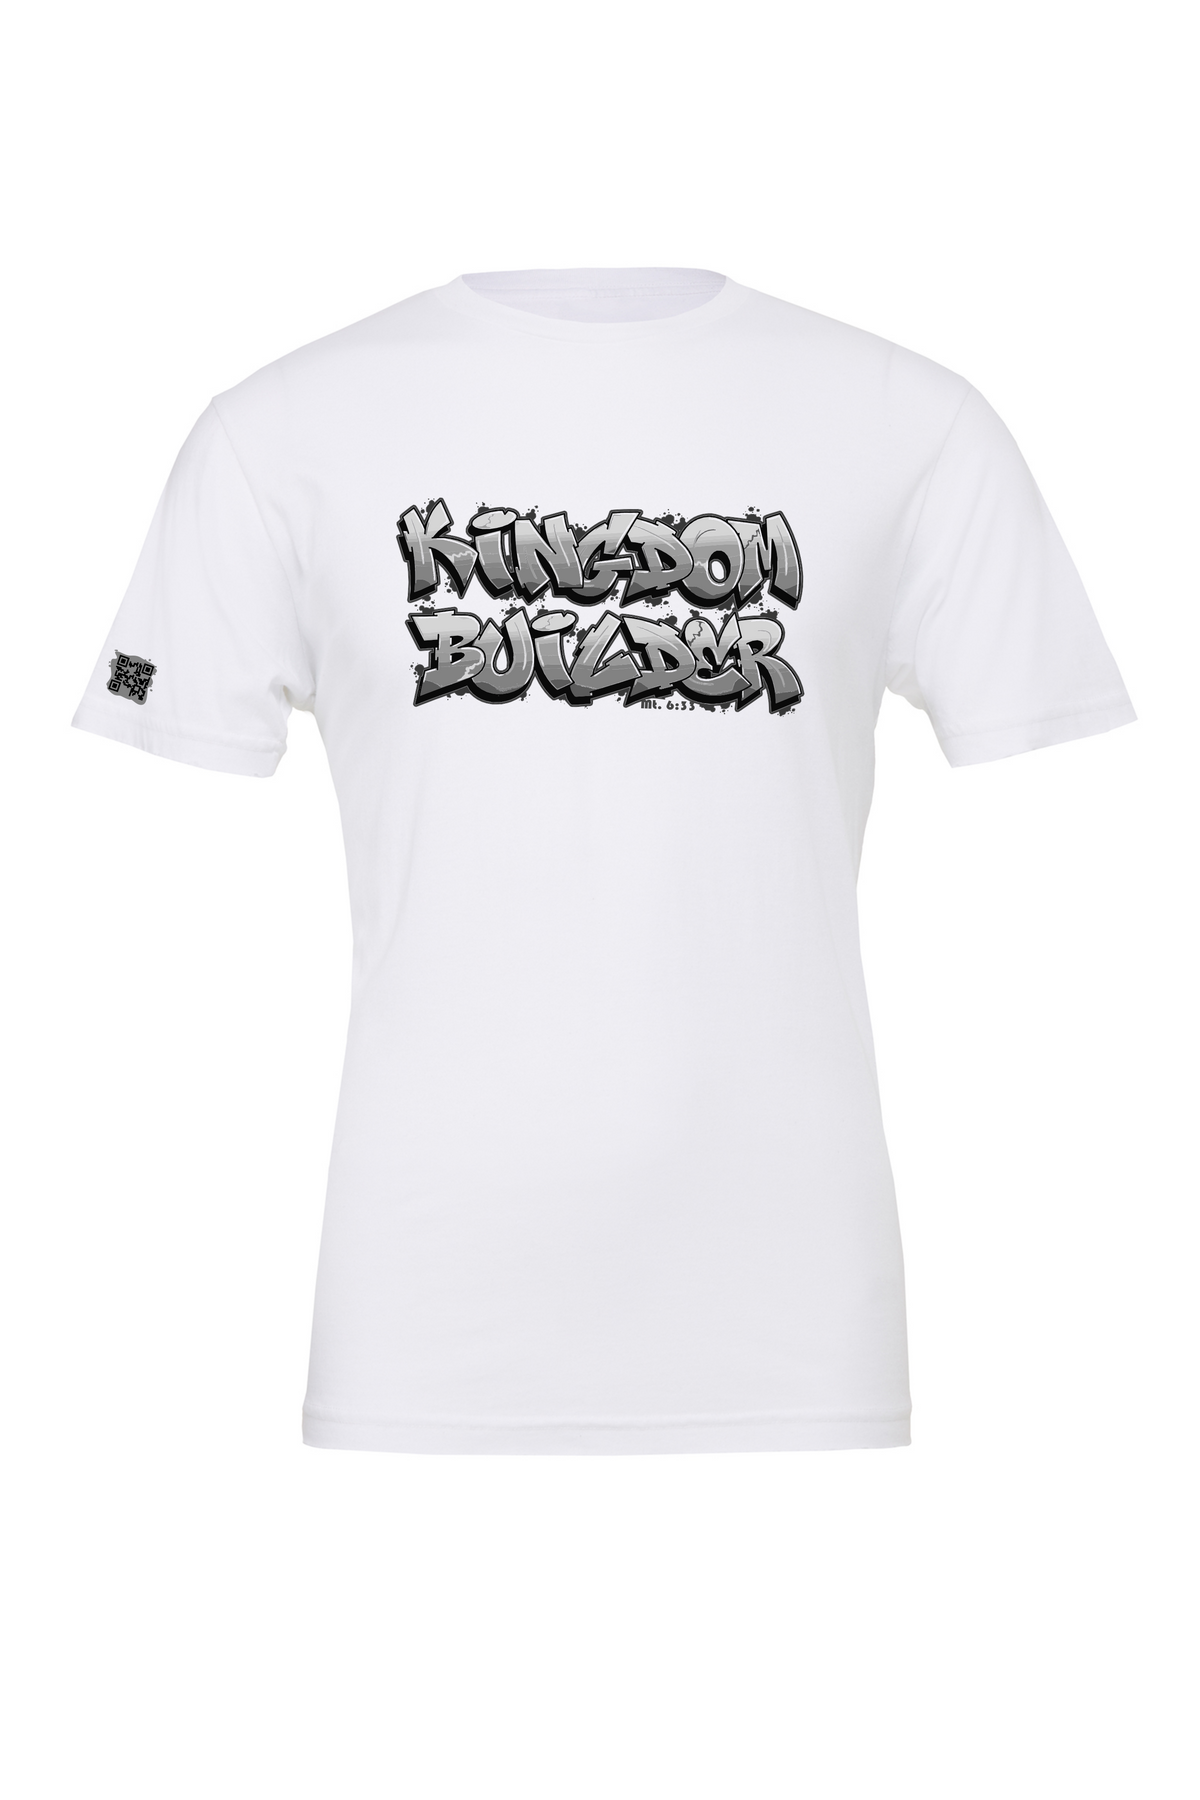 Kingdom Builder - White T-Shirt - Black/White Graphics